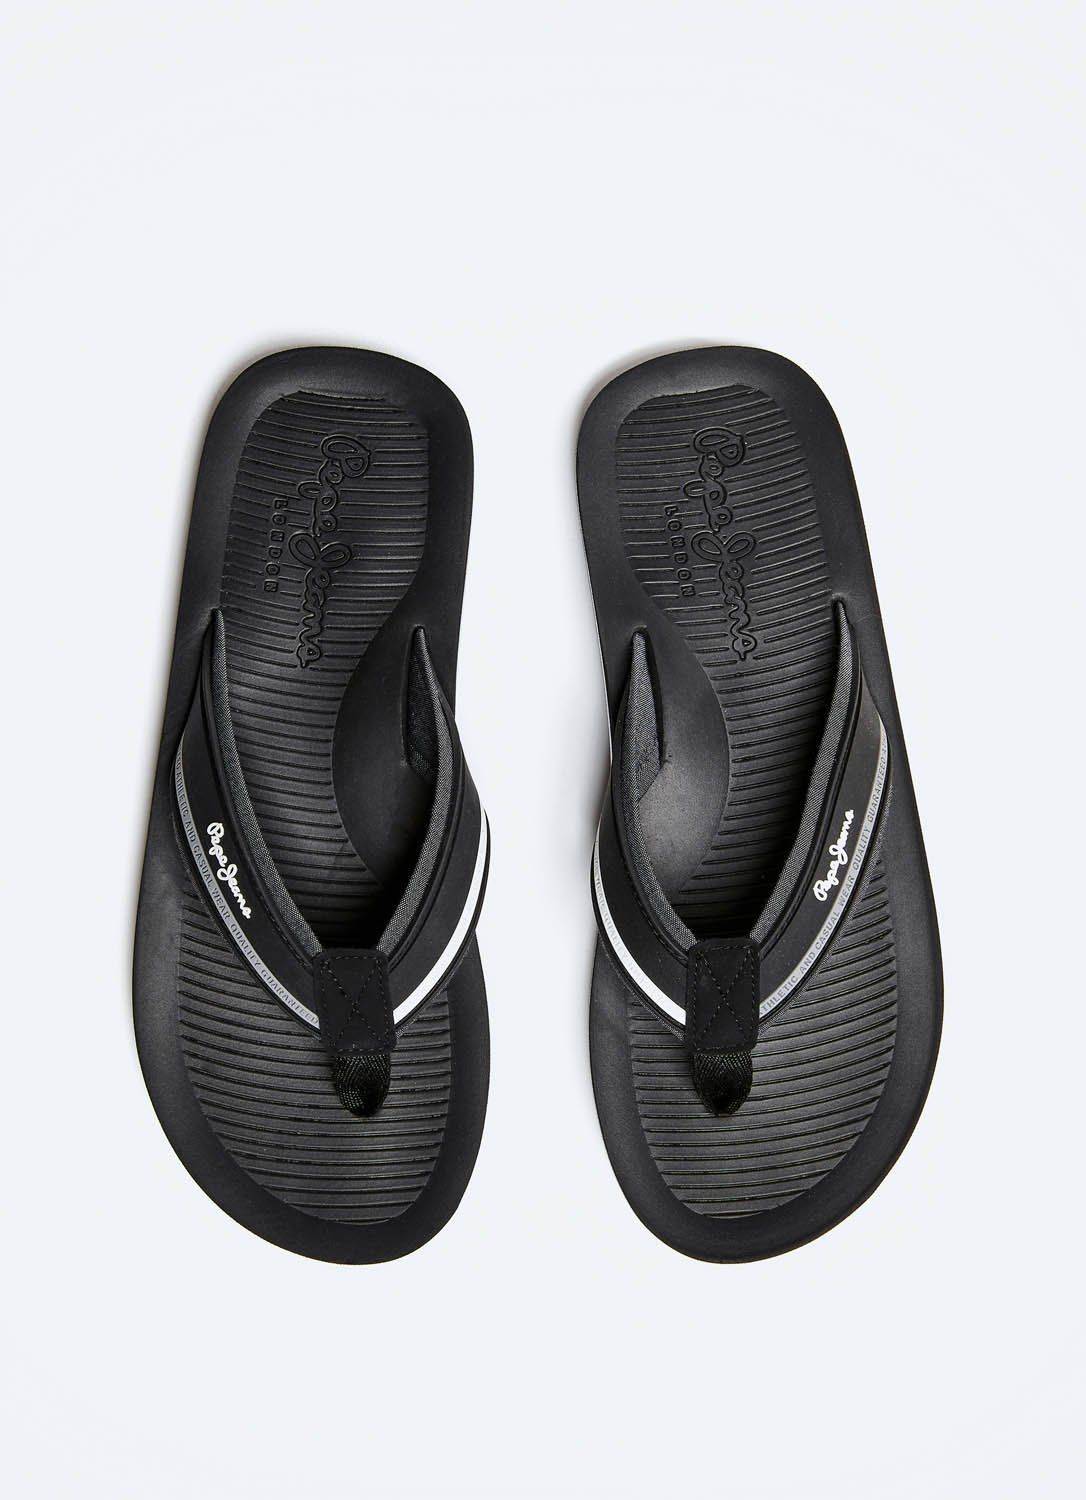 Мужские сандалии Pepe Jeans London(SOUTH BEACH PMS70106), черные, цвет черный, размер 41 - фото 3